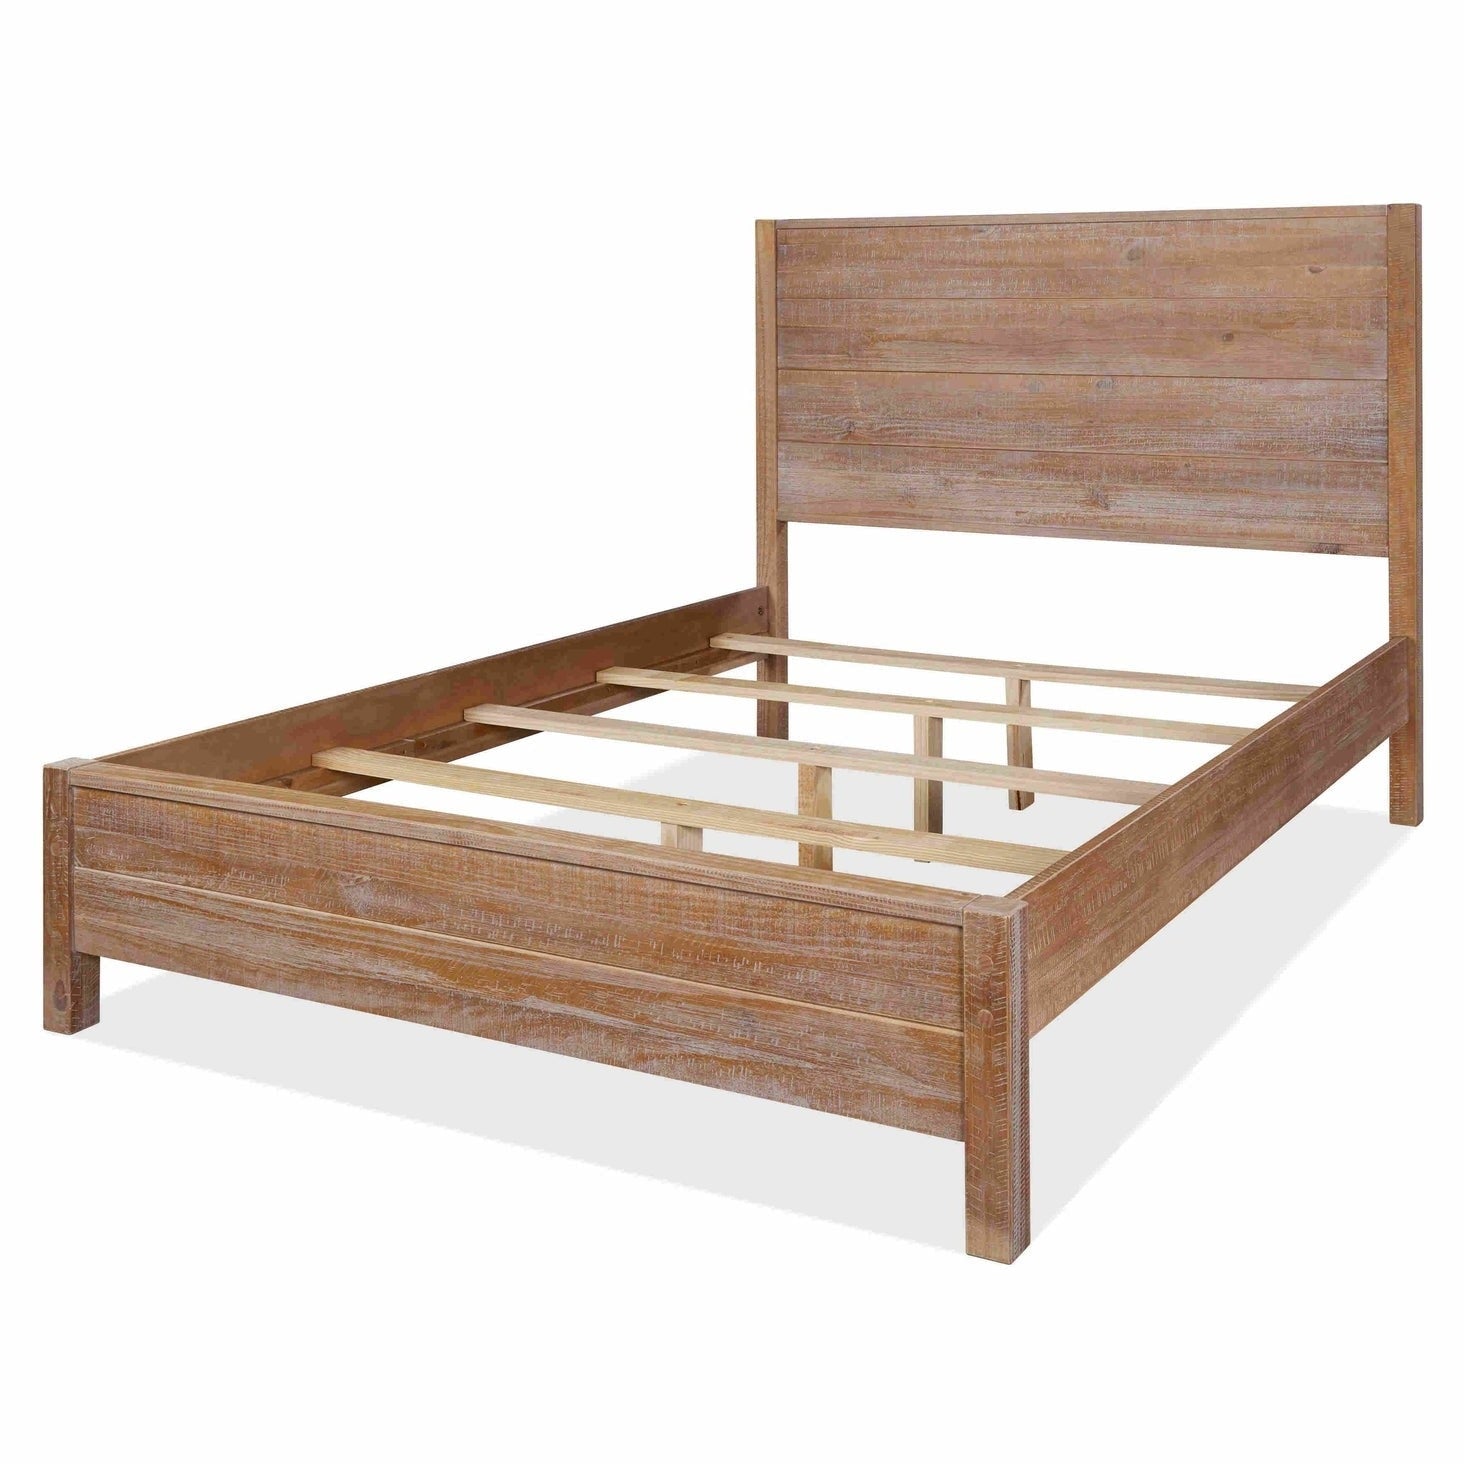 Bedroom > Bed Frames > Platform Beds - FarmHome Rustic Solid Pine Platform Bed In King Size